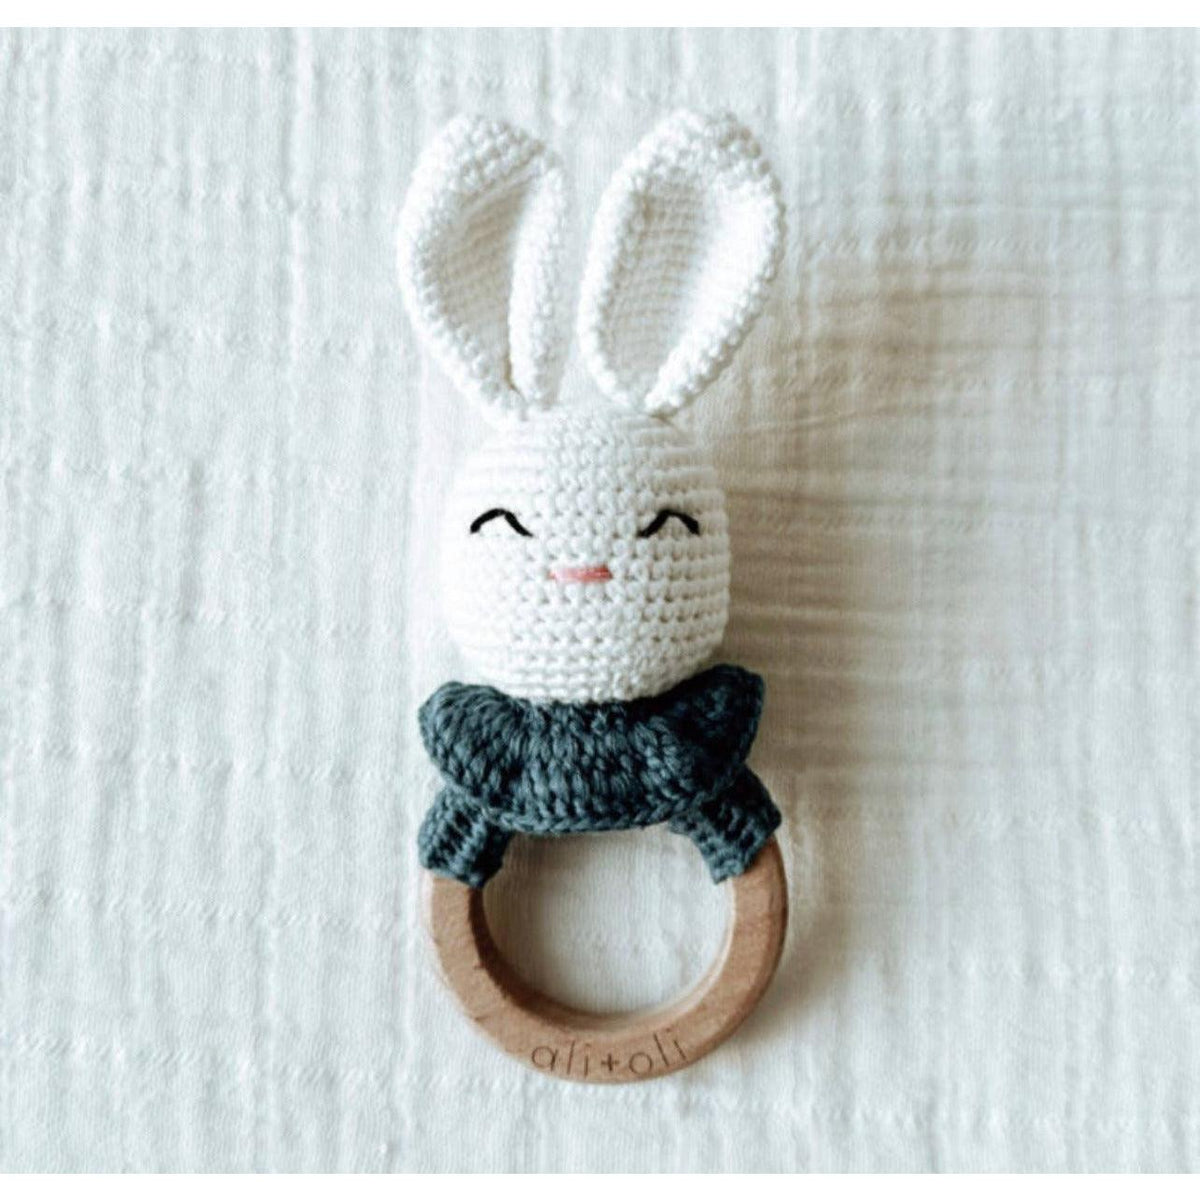 Ali & Oli | Infant Baby Bunny Crochet Teething Toy | Rattle Wood Ring - becauseofadi